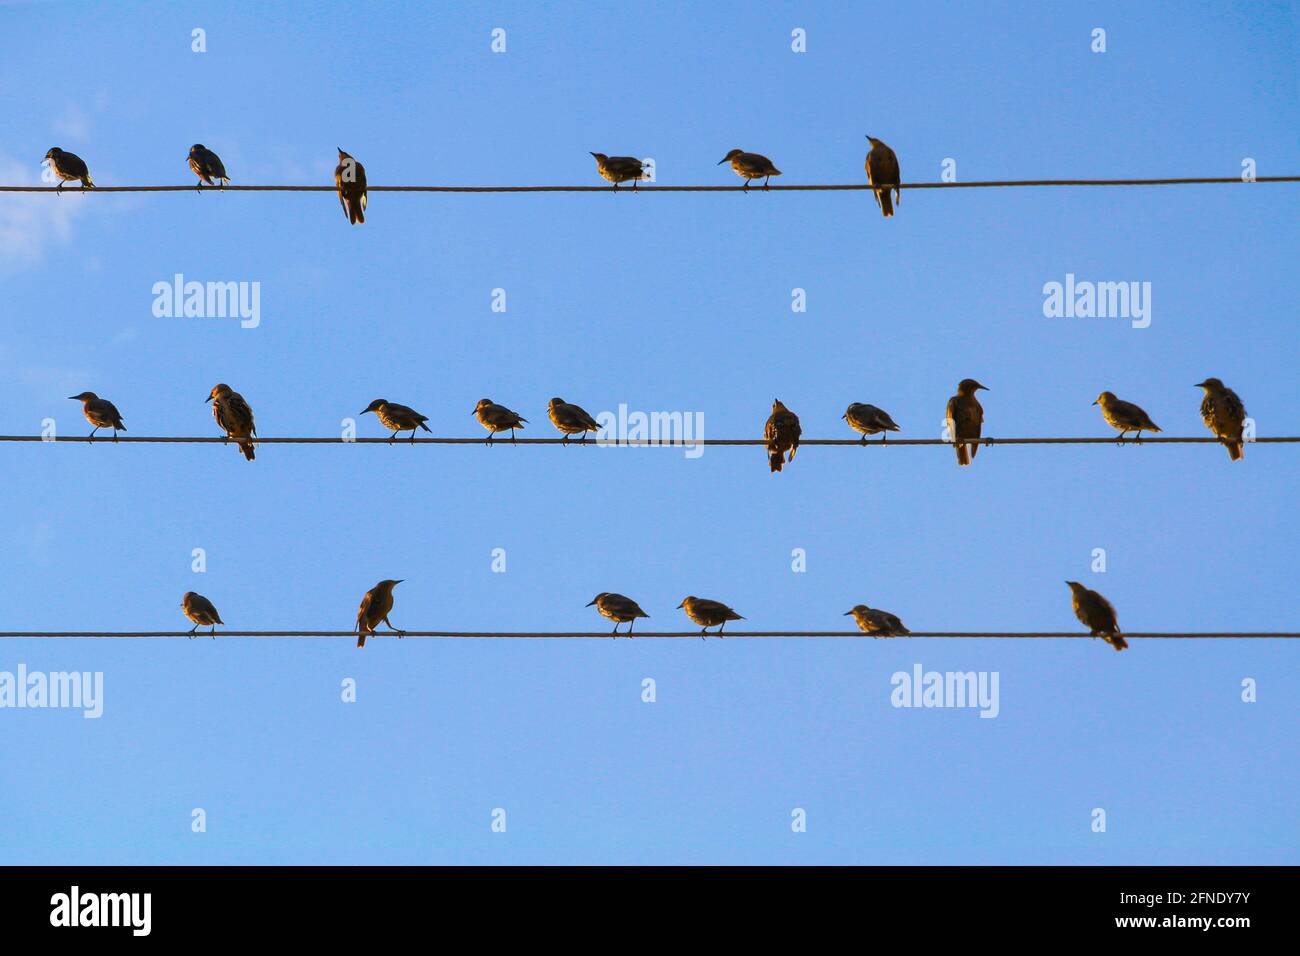 Un troupeau d'oiseaux noirs assis sur des fils semblables à des notes musicales contre un ciel bleu sans nuages. Banque D'Images